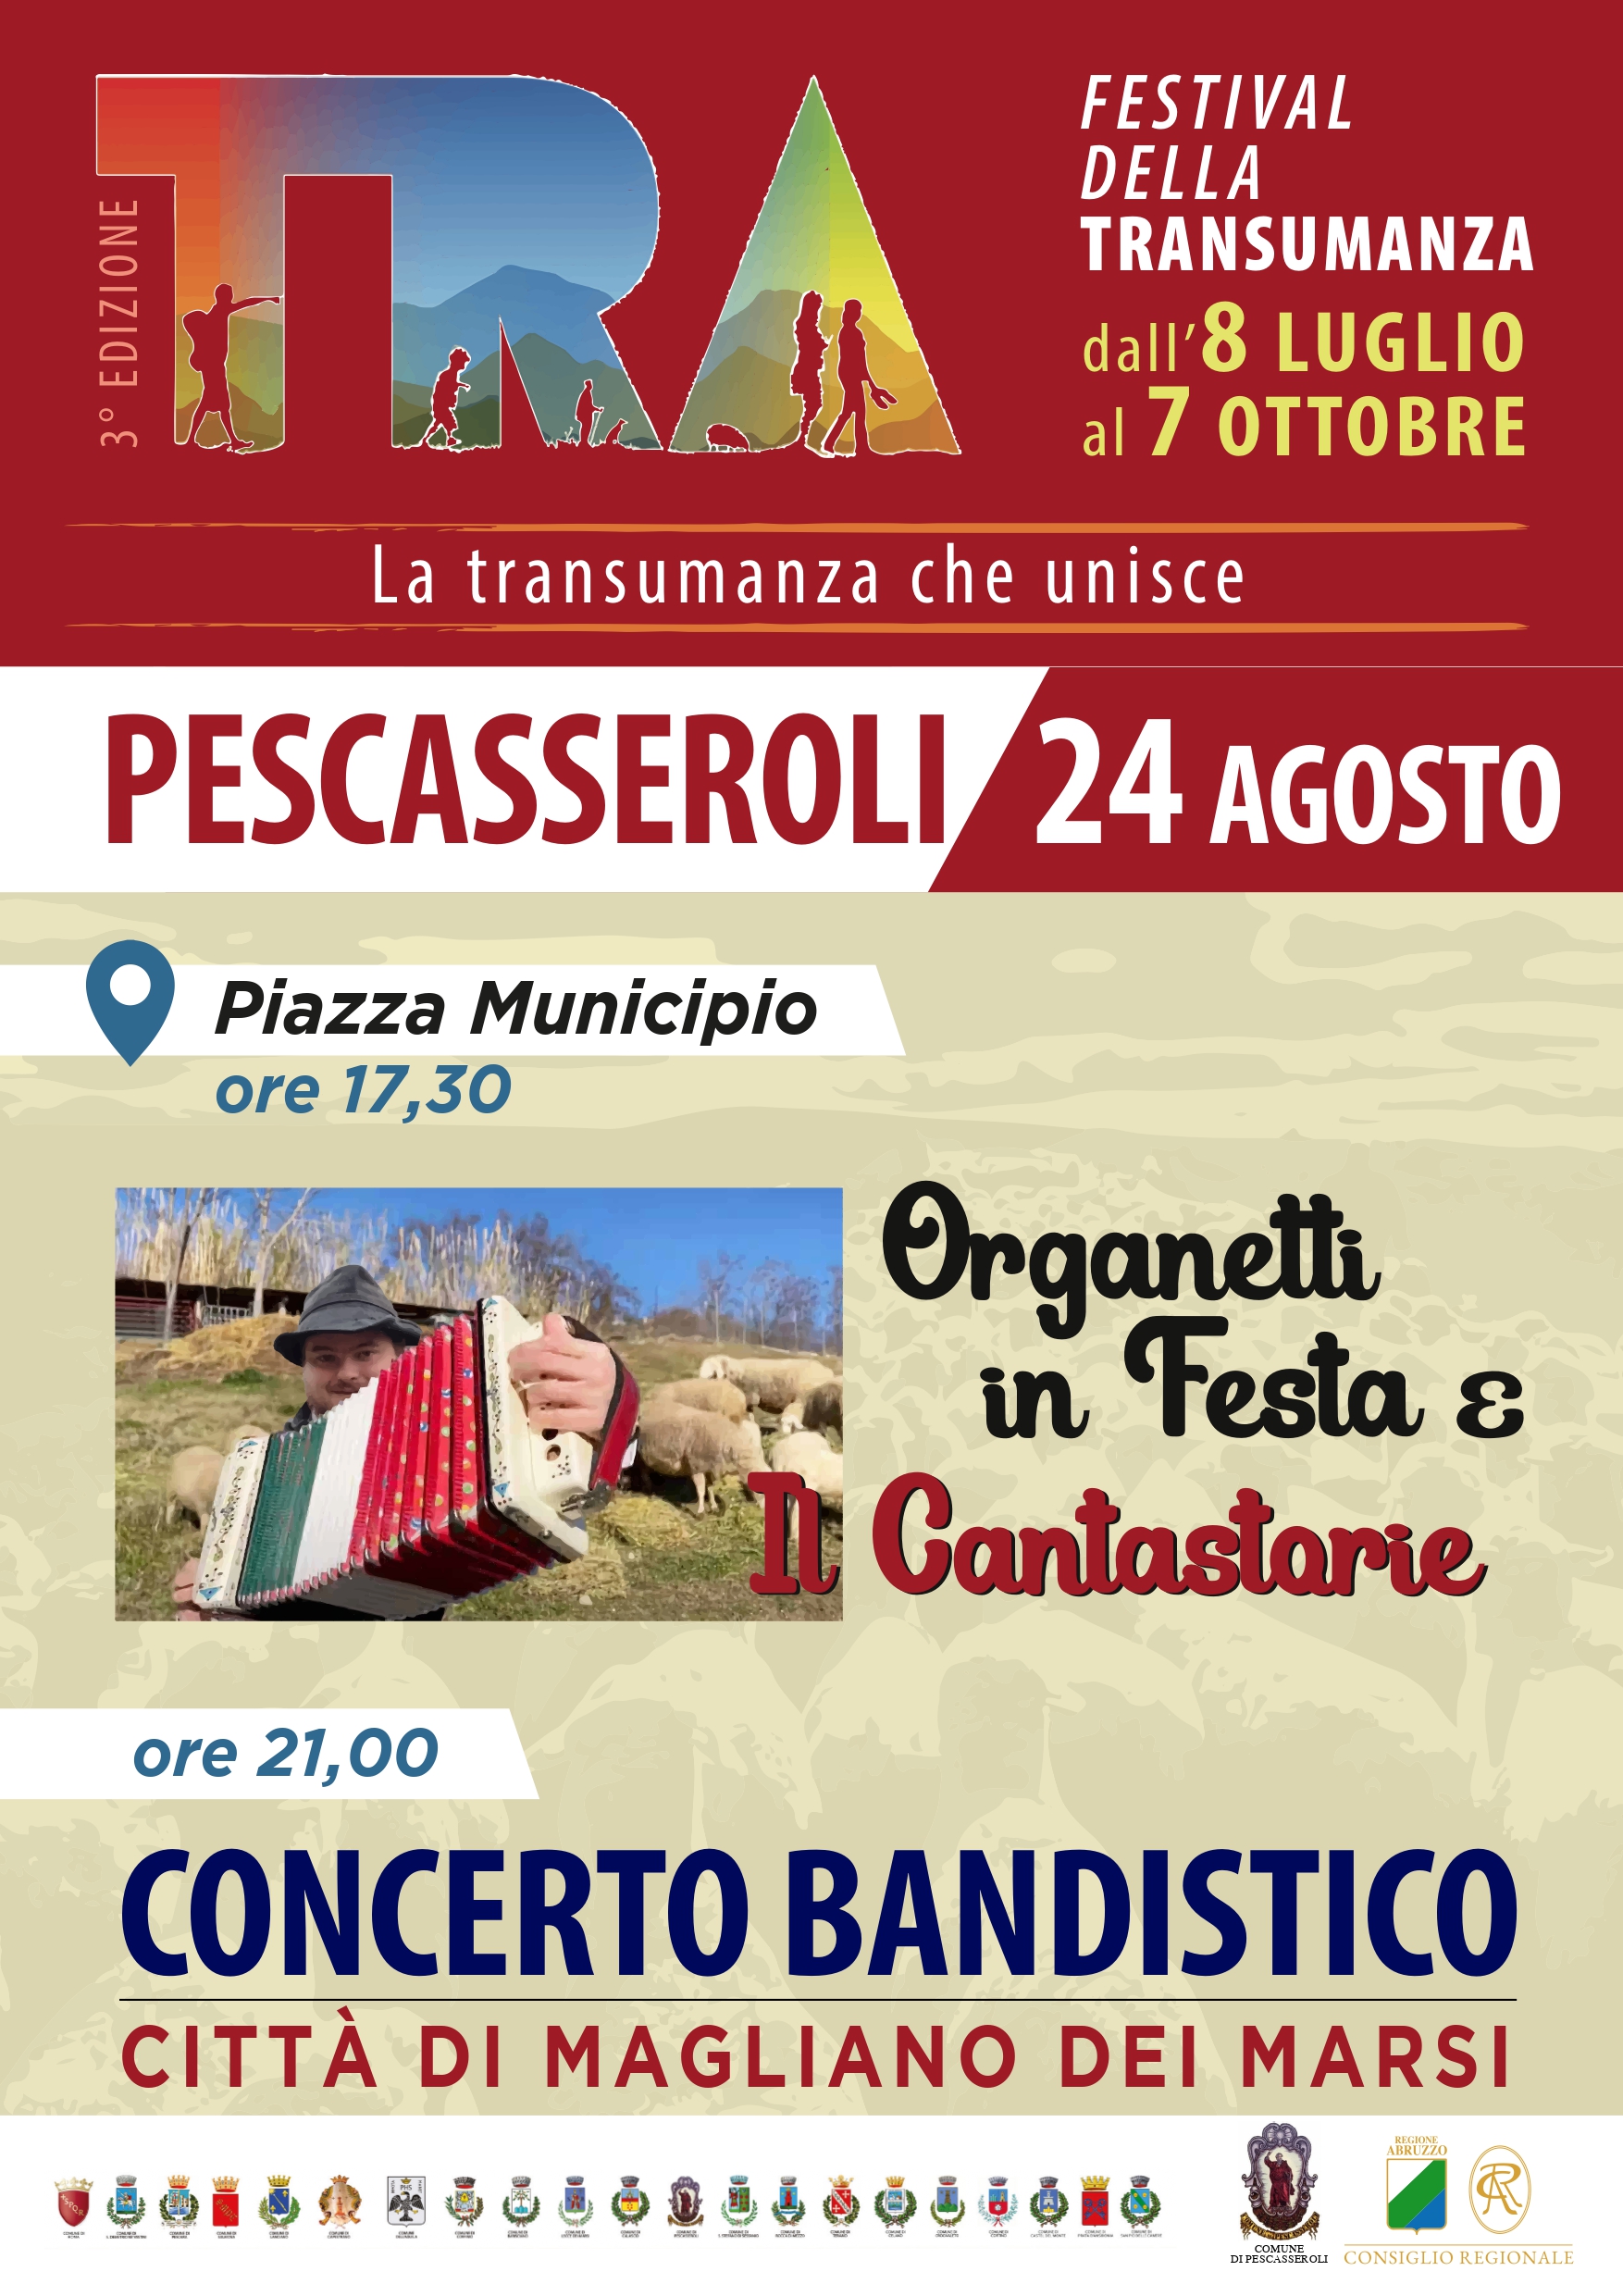 Festival della Transumanza, organetti in festa a Pescasseroli: 24 agosto ore 21